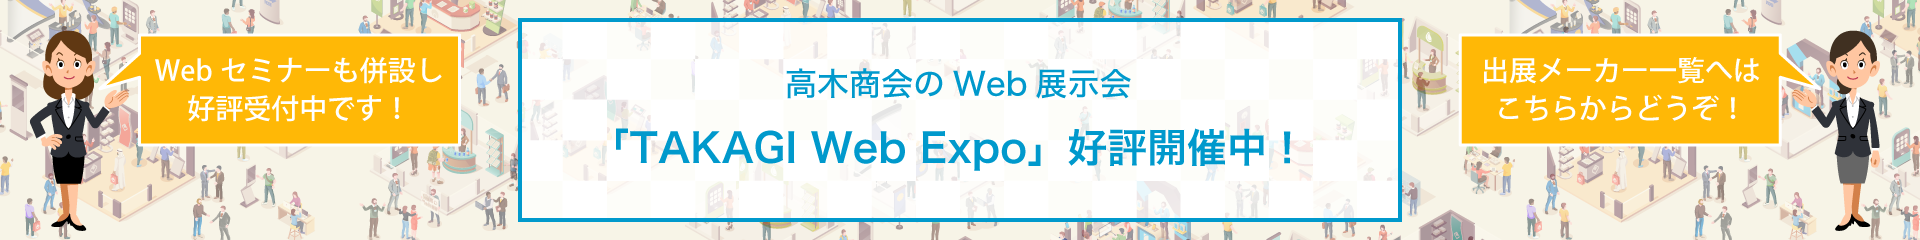 TAKAGI Web Expo 2021